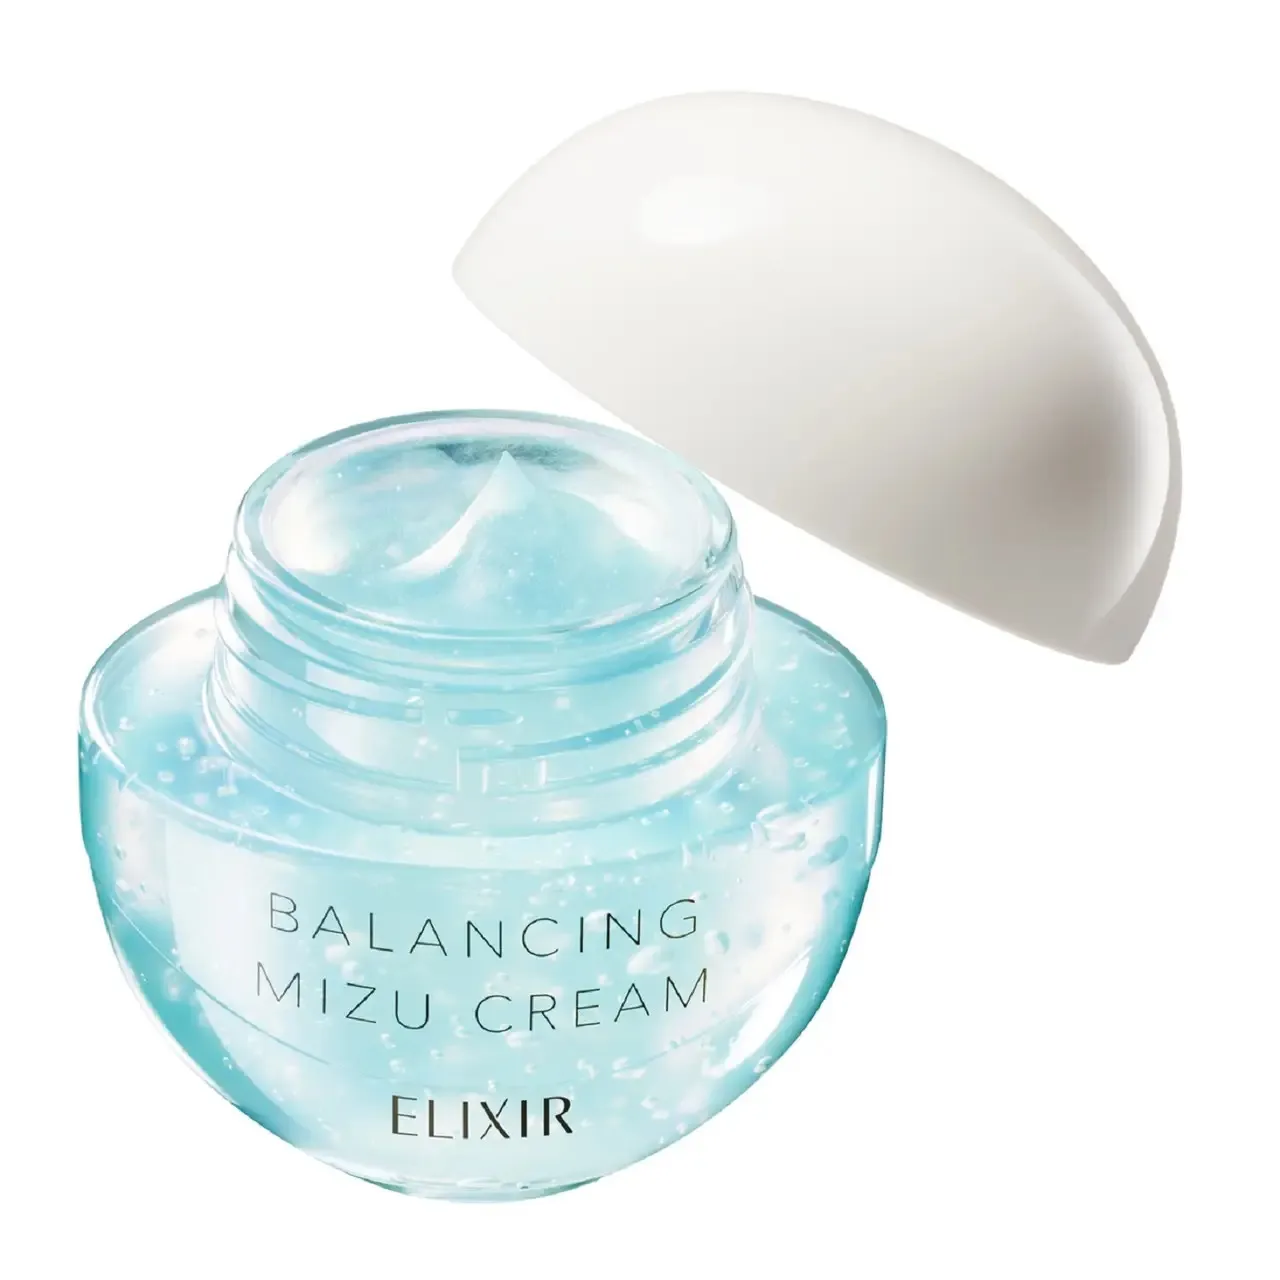 Балансирующий увлажняющий крем для молодой кожи Shiseido Elixir Reflet Balancing Mizu Cream